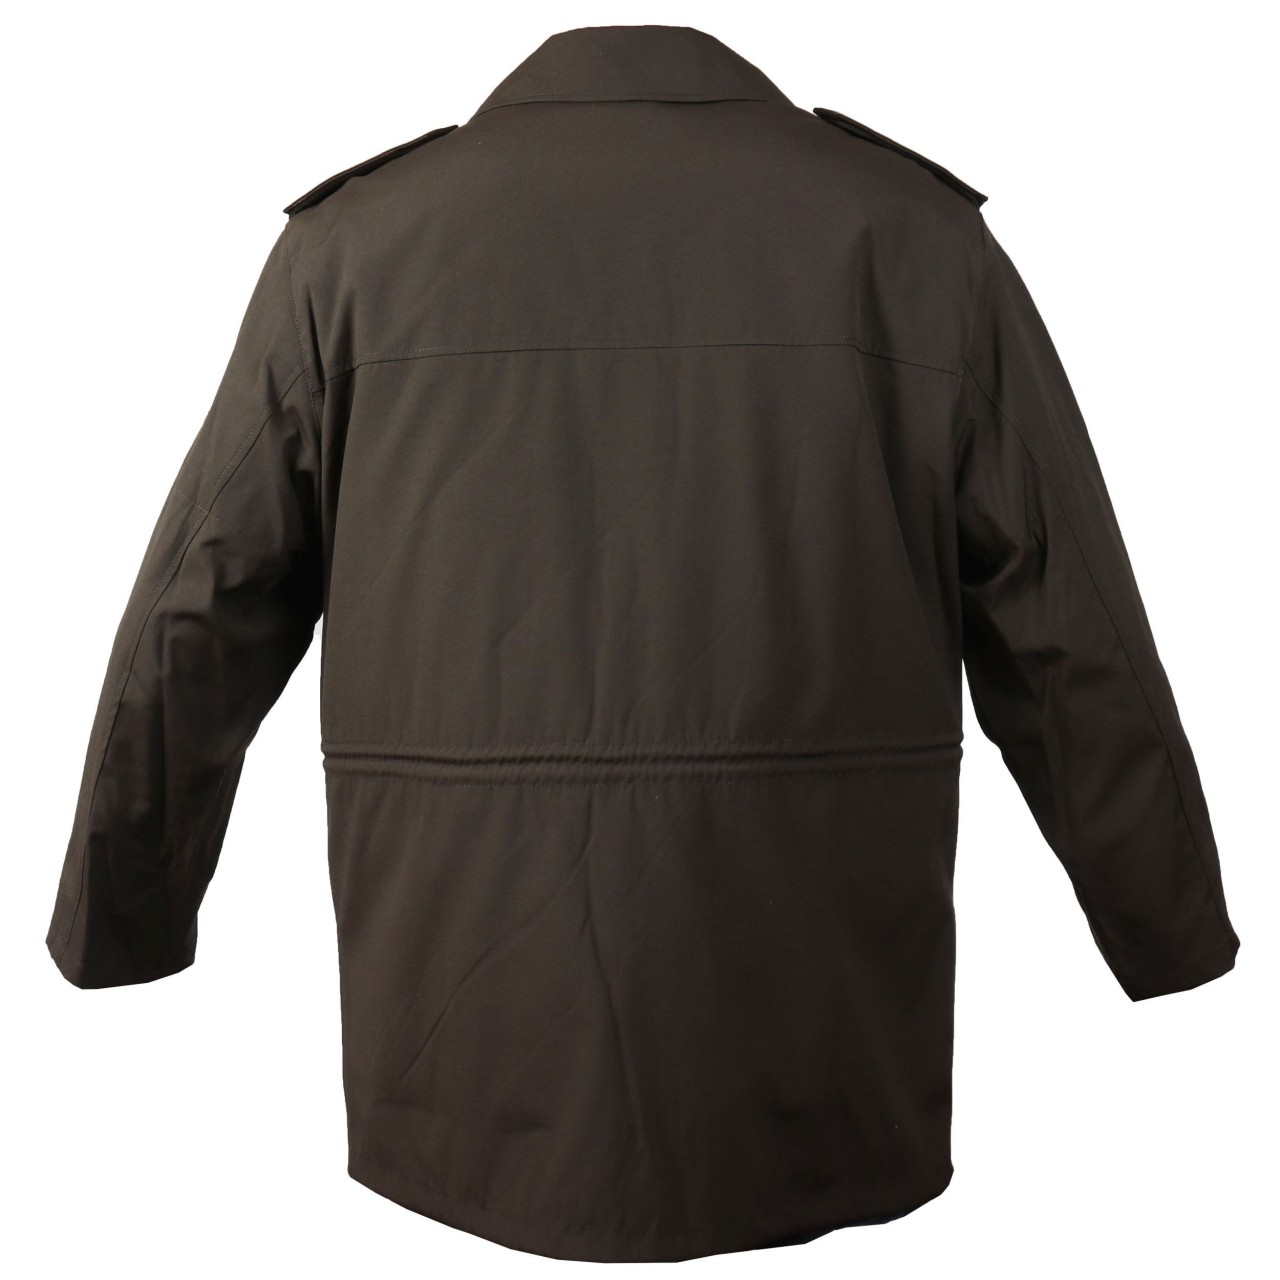 Kabát vychádzkový SK vz.98 s prešívanou odnímateľnou vložkou